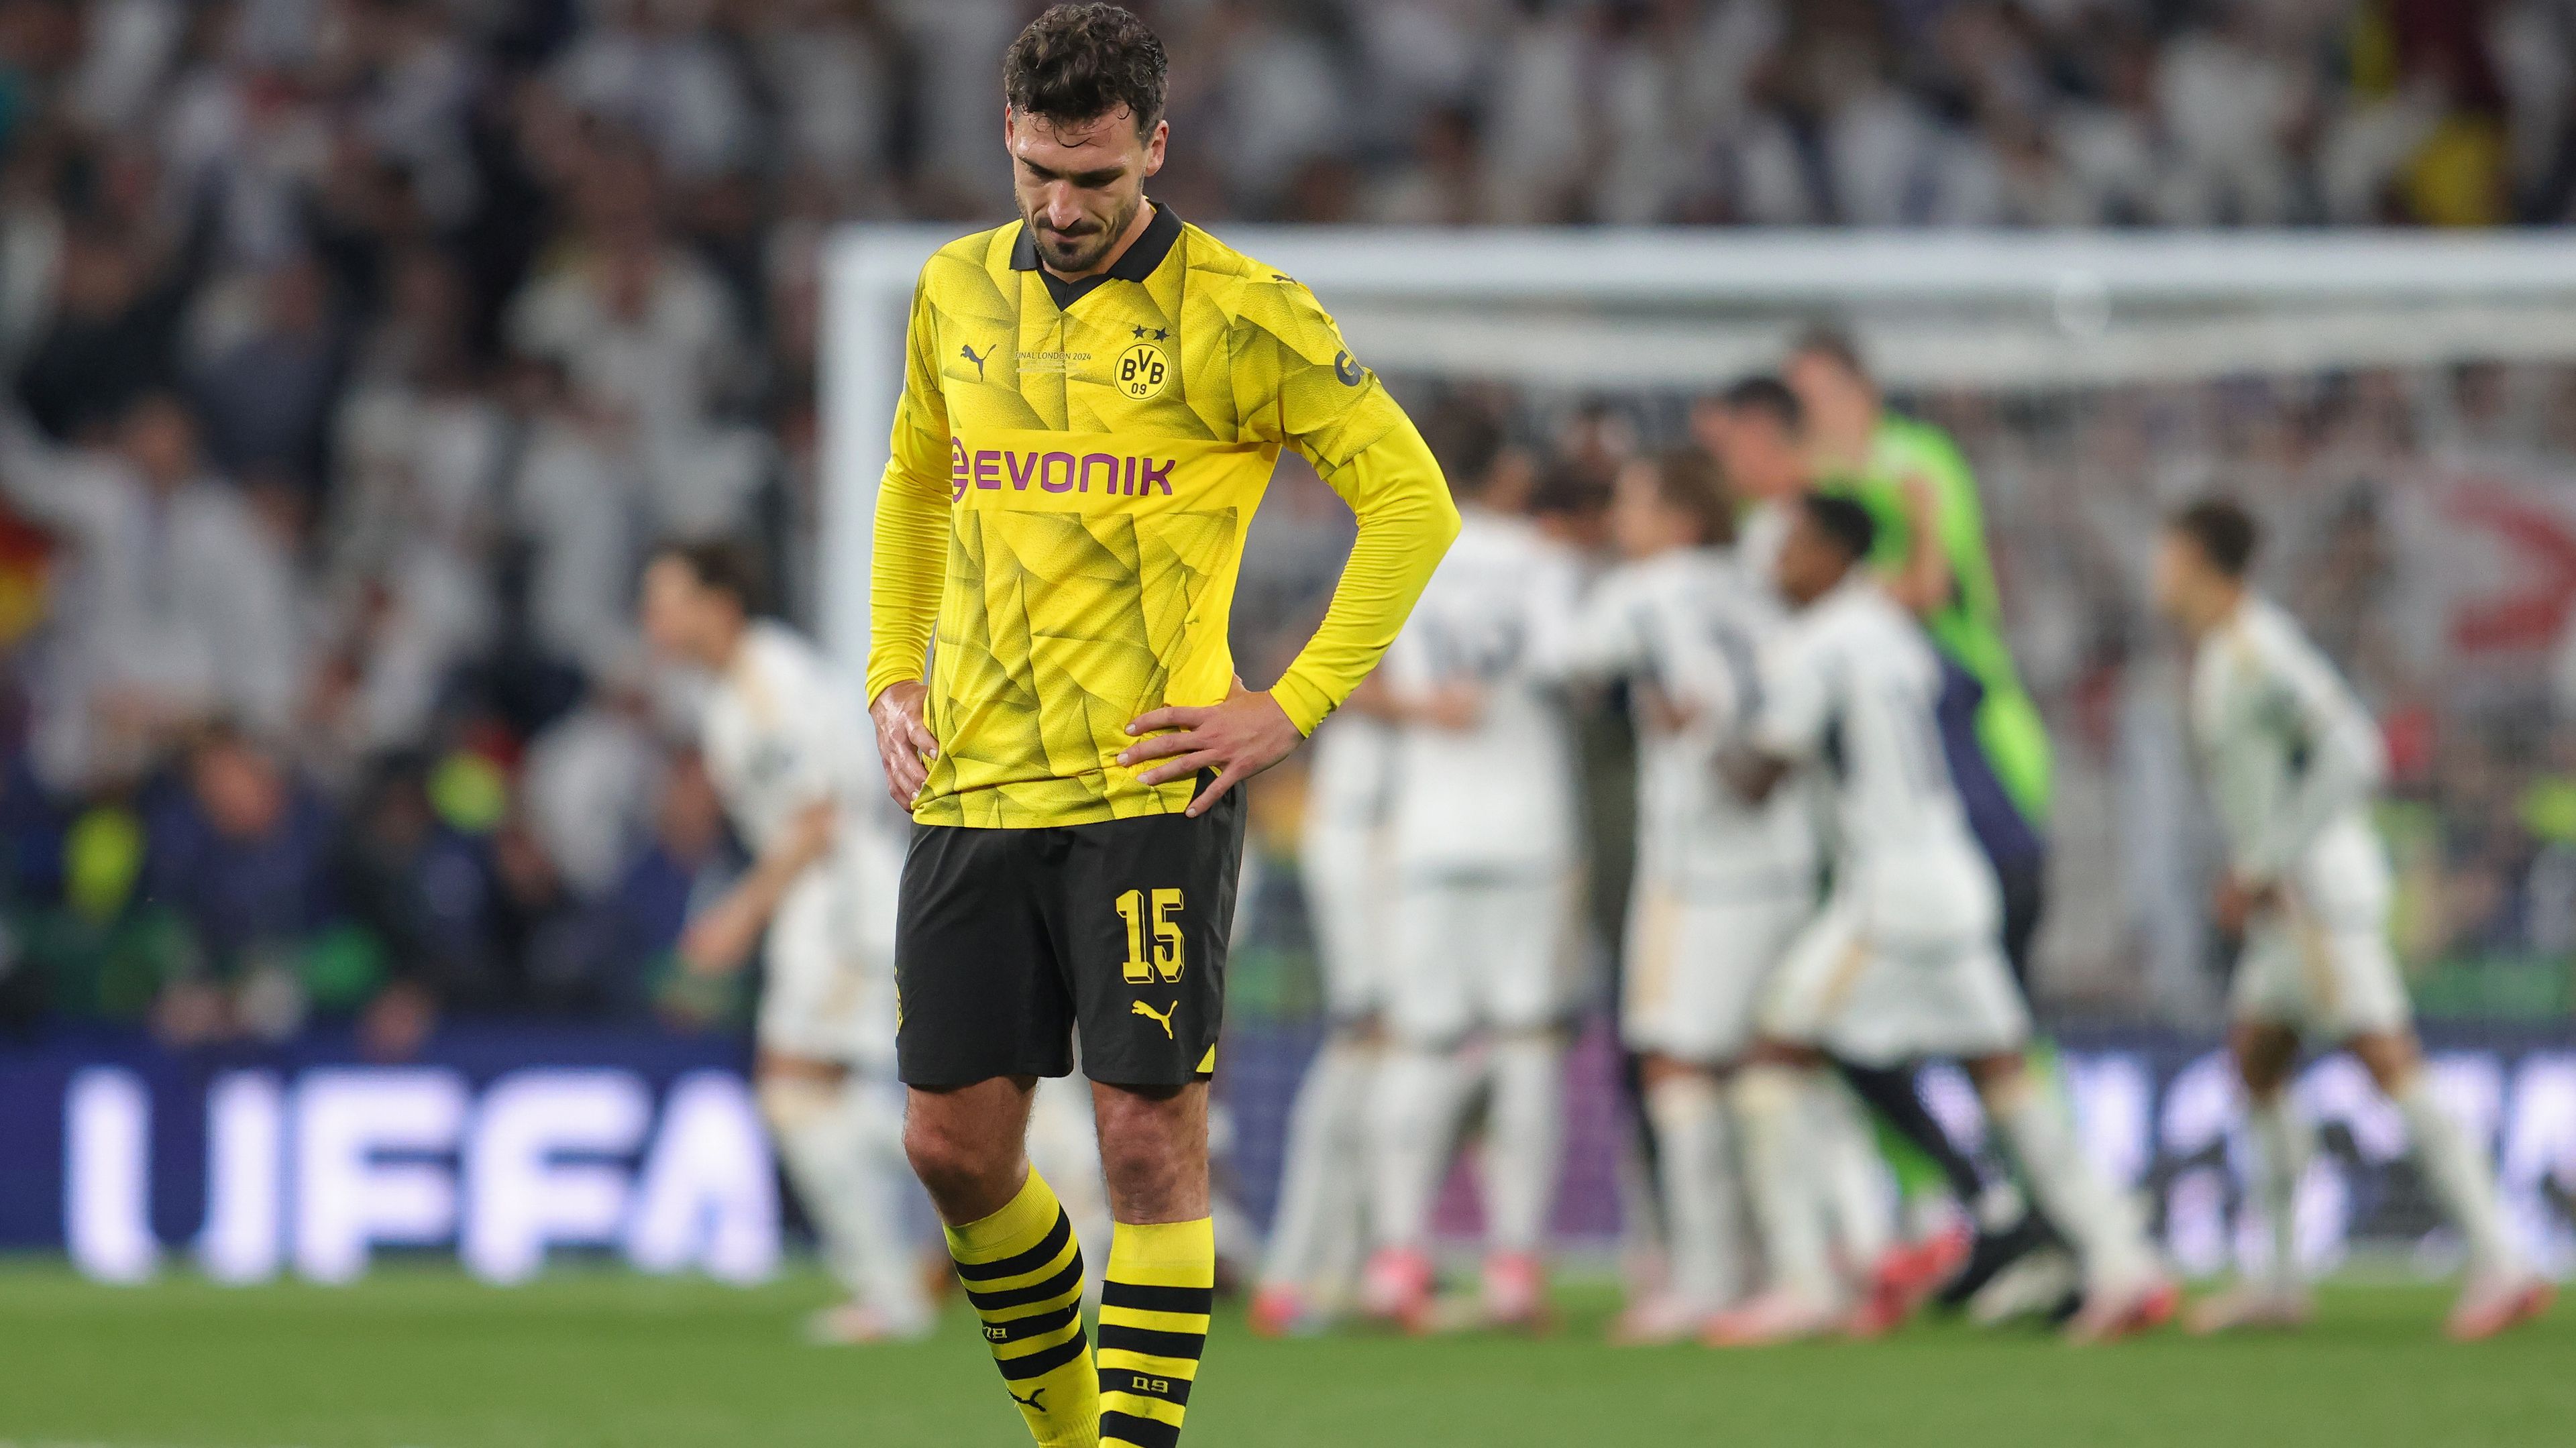 Eldőlt, a Dortmund-legenda távozik a klubtól – így búcsúzott